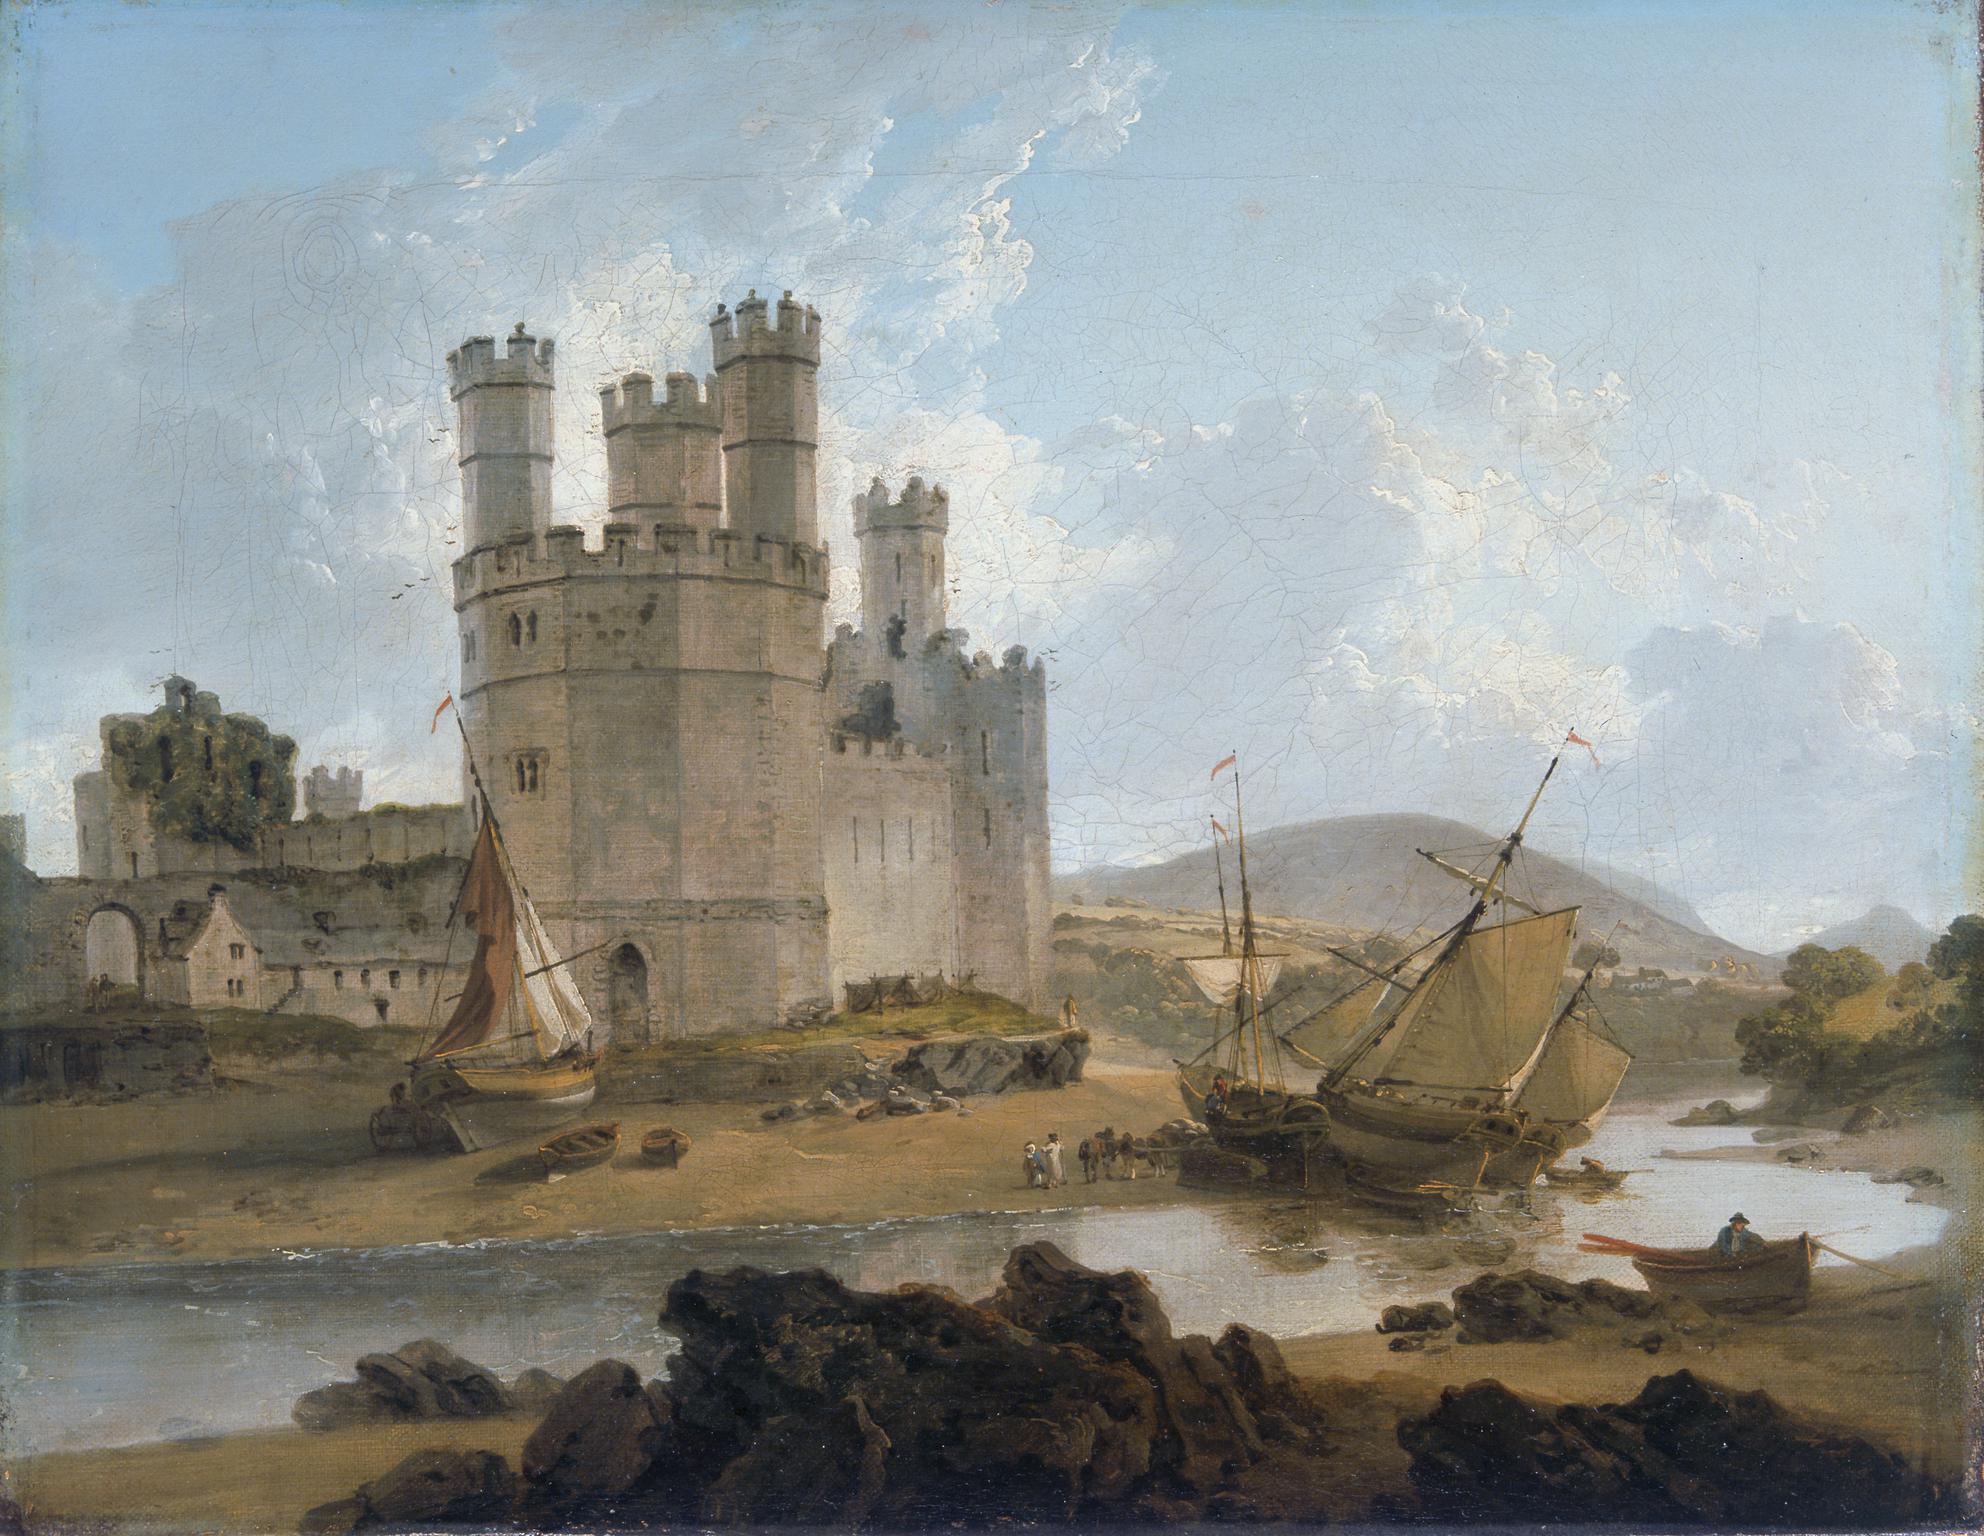 Castell Caernarfon